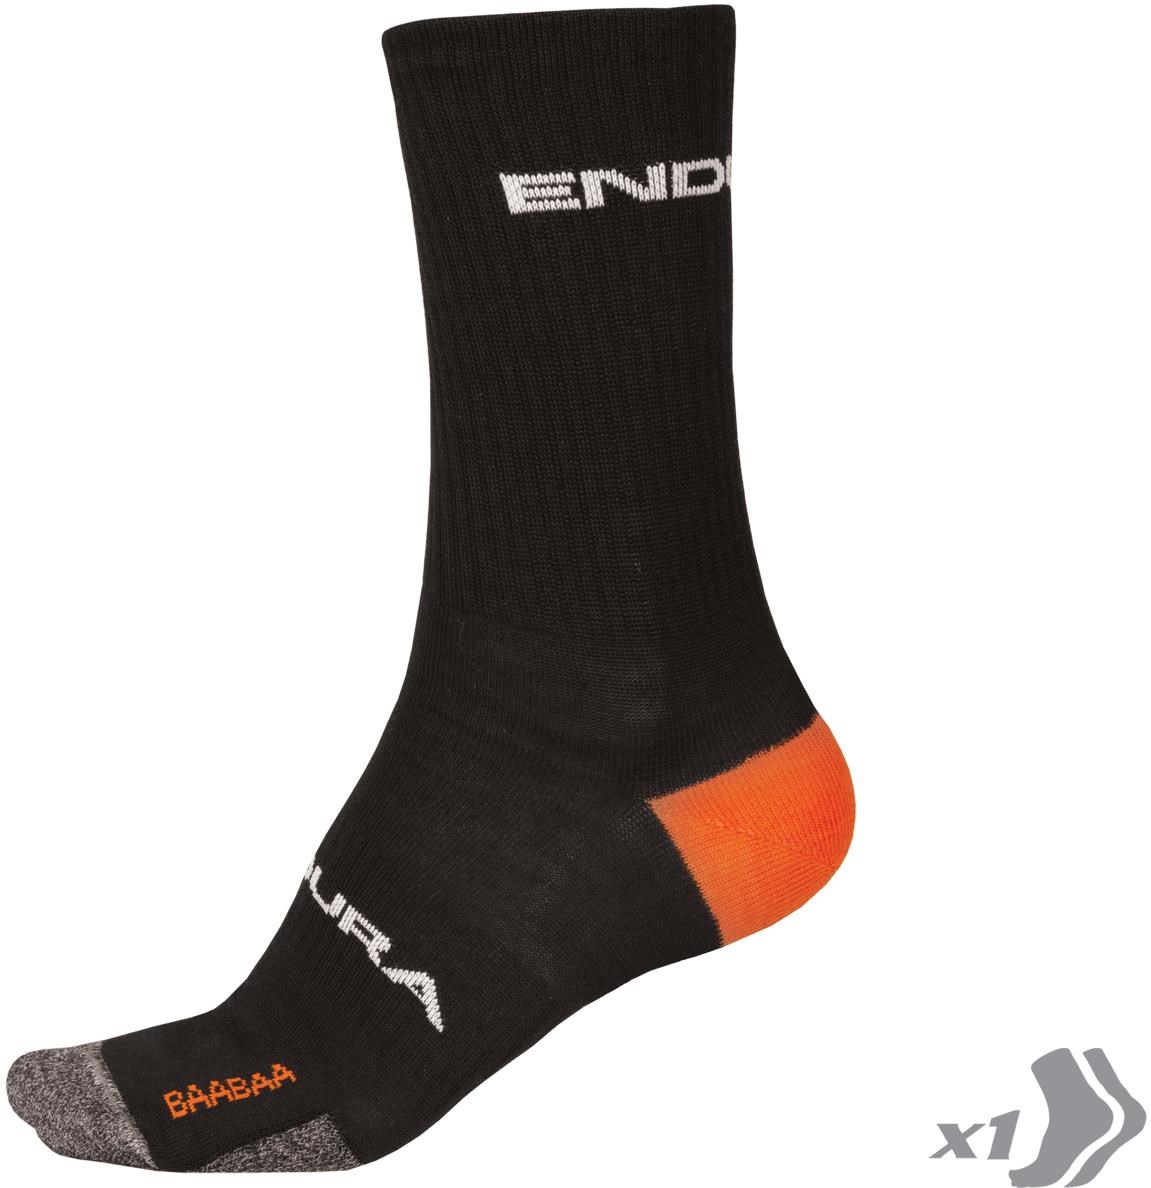 Endura Baabaa Merino Winter Socks II product image